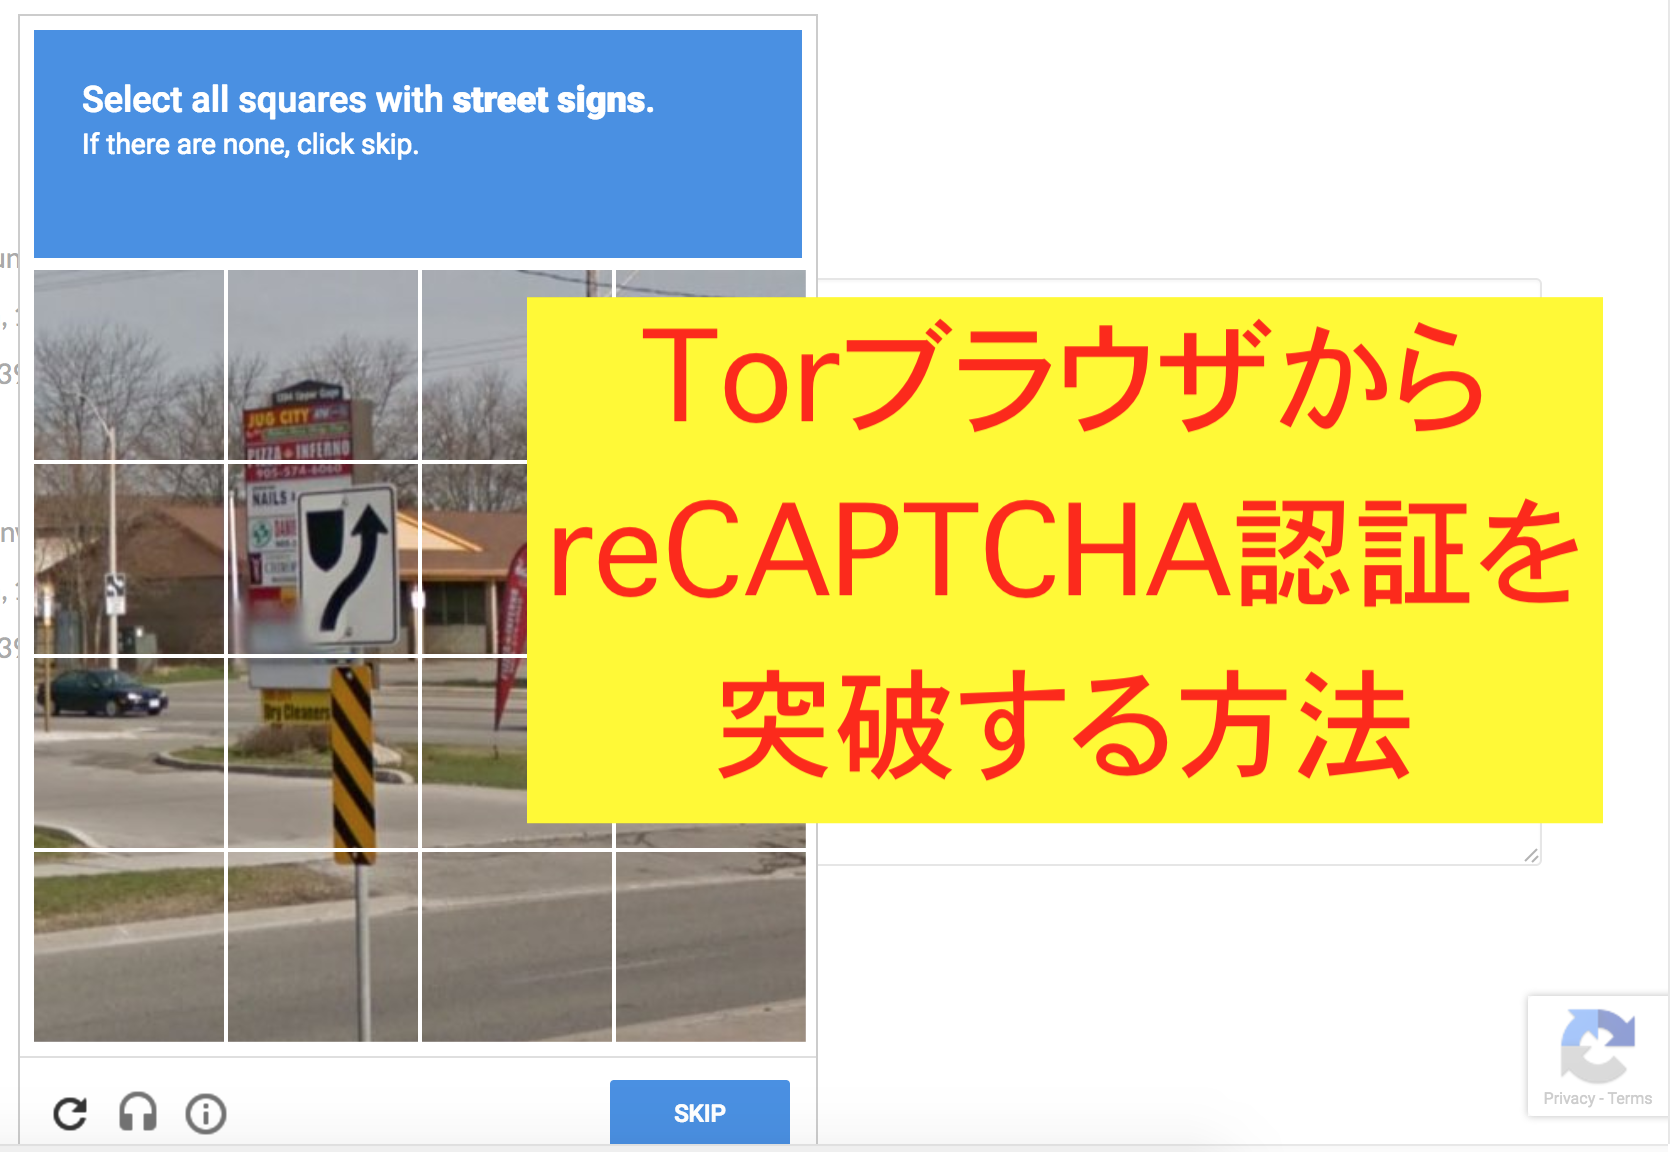 TorからreCAPTCHA認証する方法